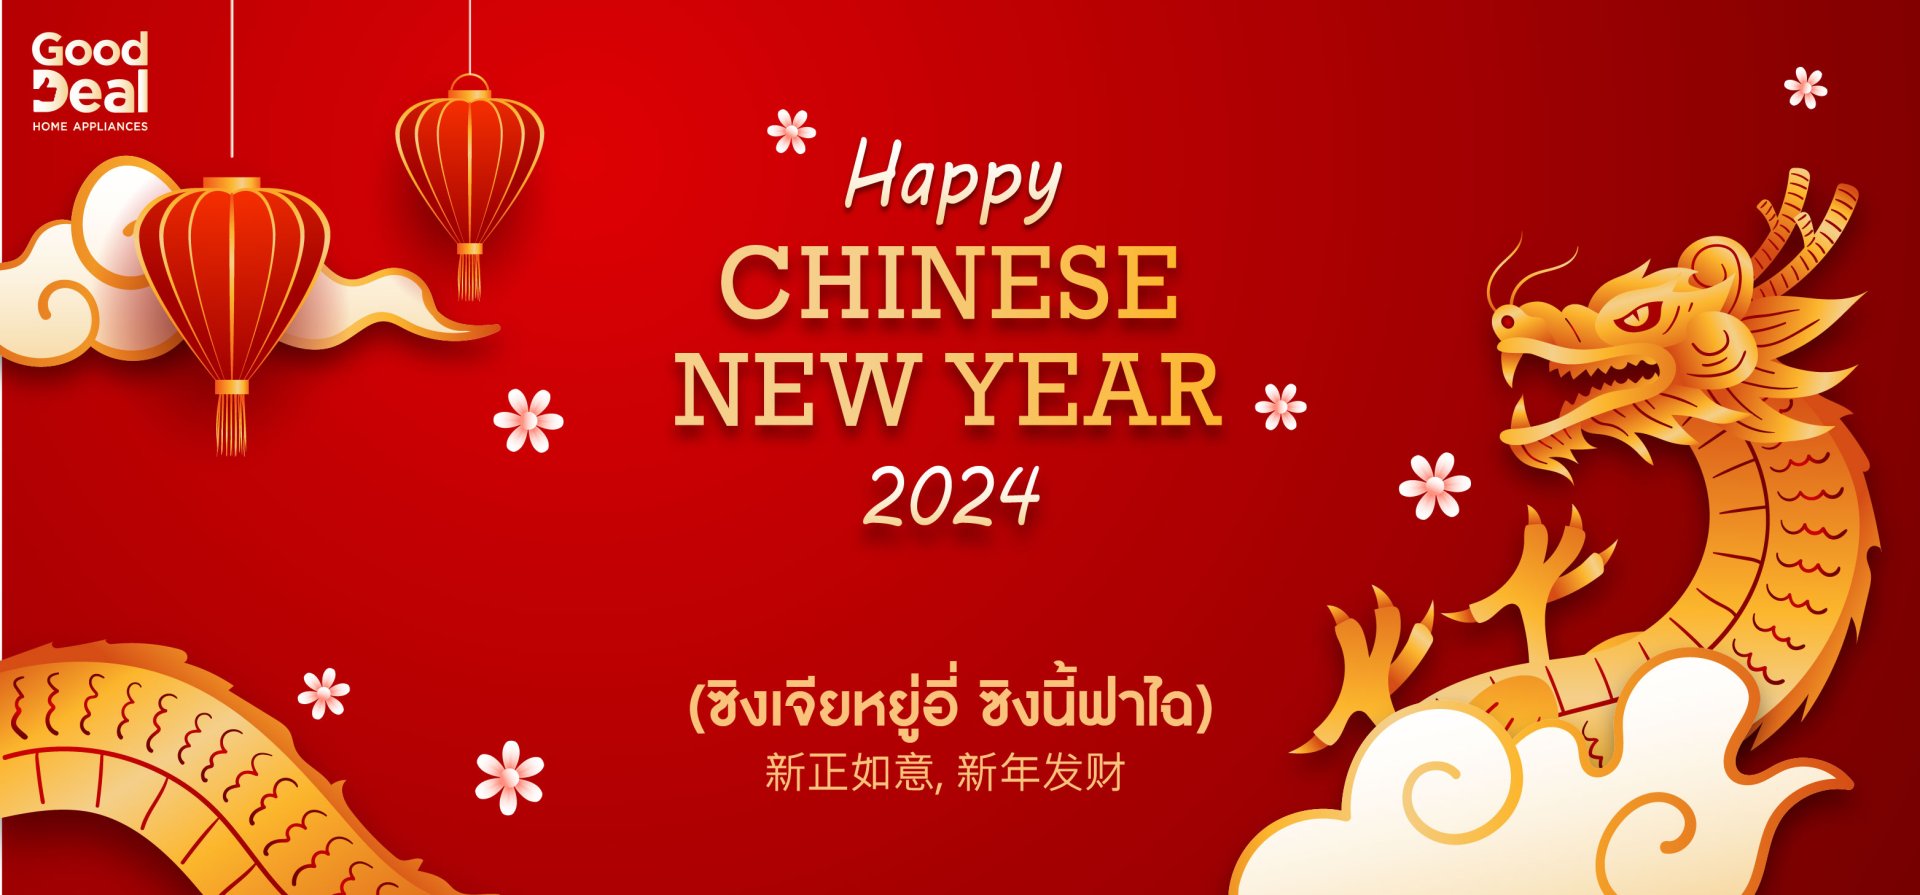 ตรุษจีน, ปีใหม่จีน,ขายเครื่องใช้ไฟฟ้า, ของขวัญ, ของขวัญปีใหม่จีน